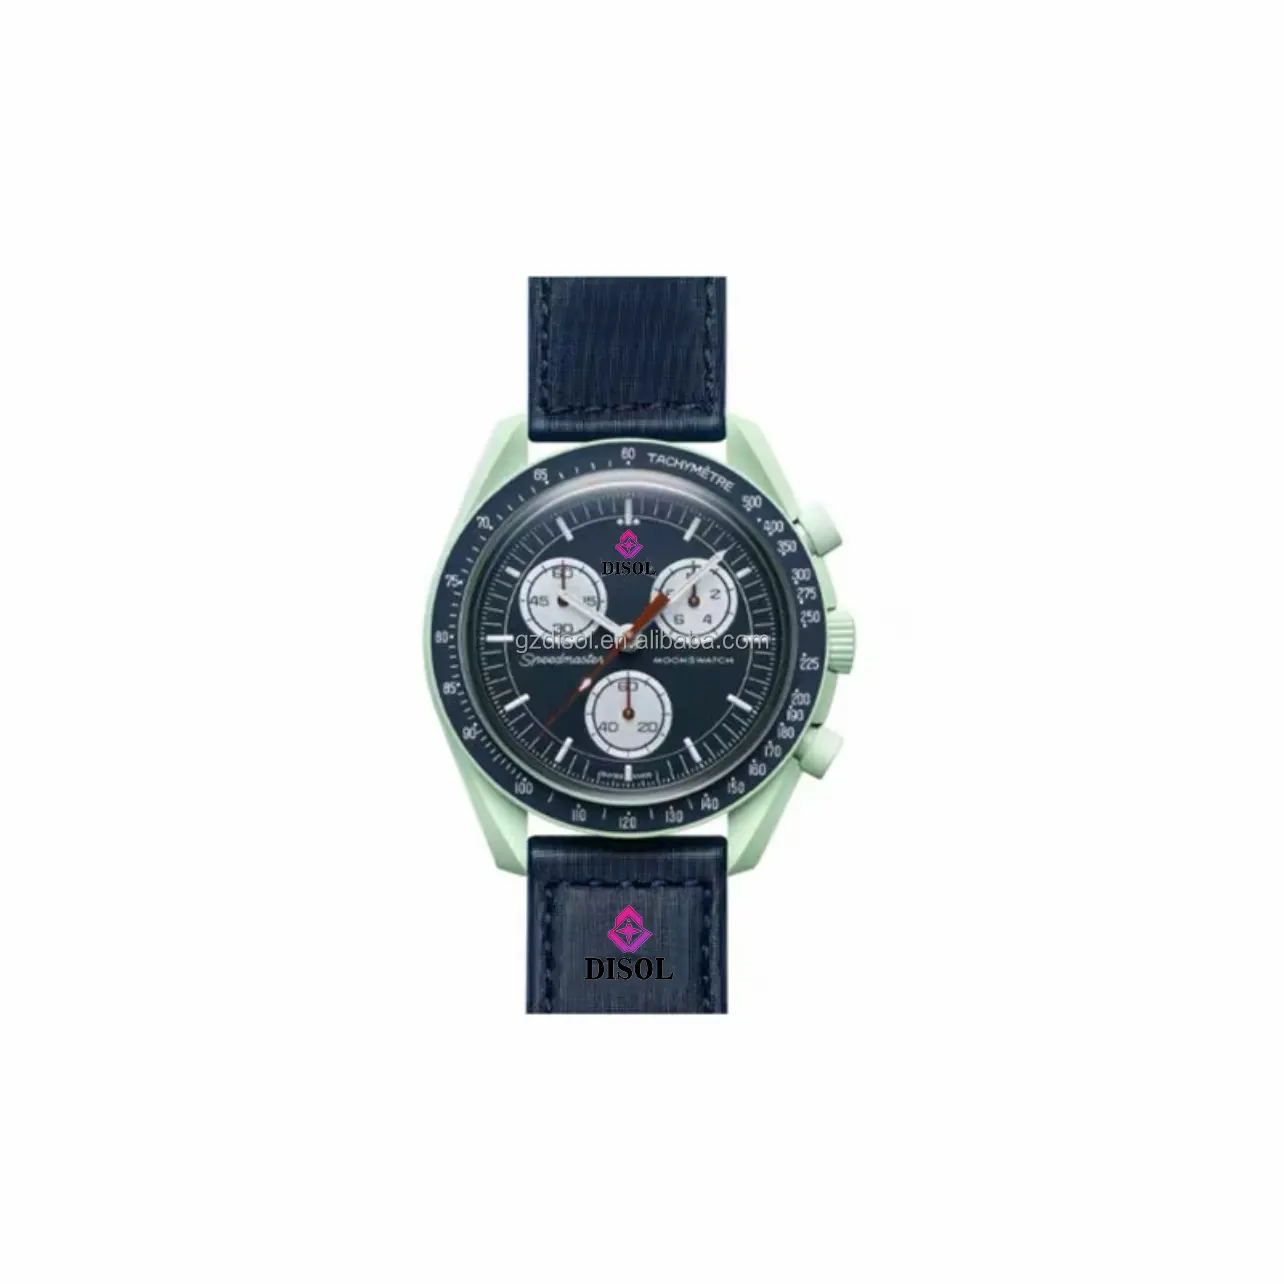 Top qualidade 1and1 Real Bioceramic moonswatch impermeável cronógrafo luxo marca planeta quartzo relógios para omegas x swatches